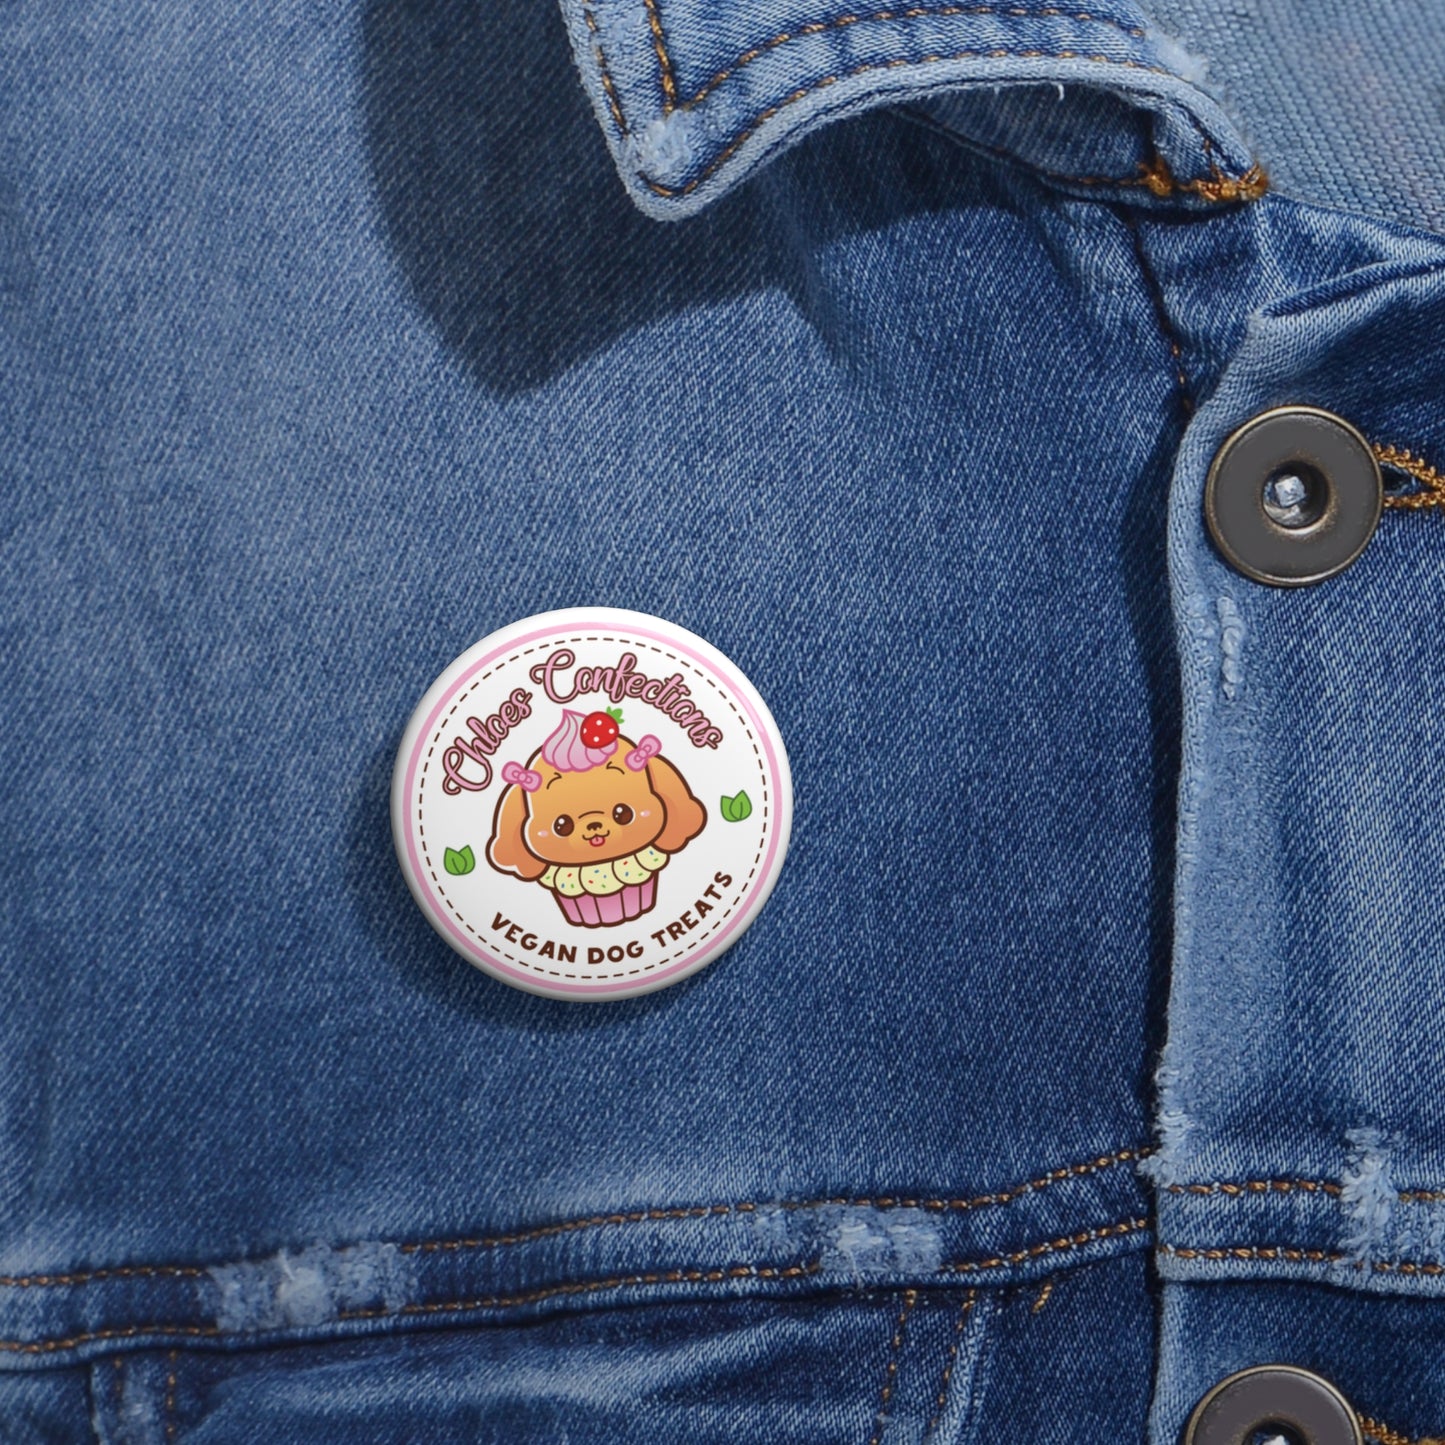 Chloe's Vegan Pin Button, Cute Chibi Pin Button, Cute Kawaii Pin Button, Vegan Pin Button